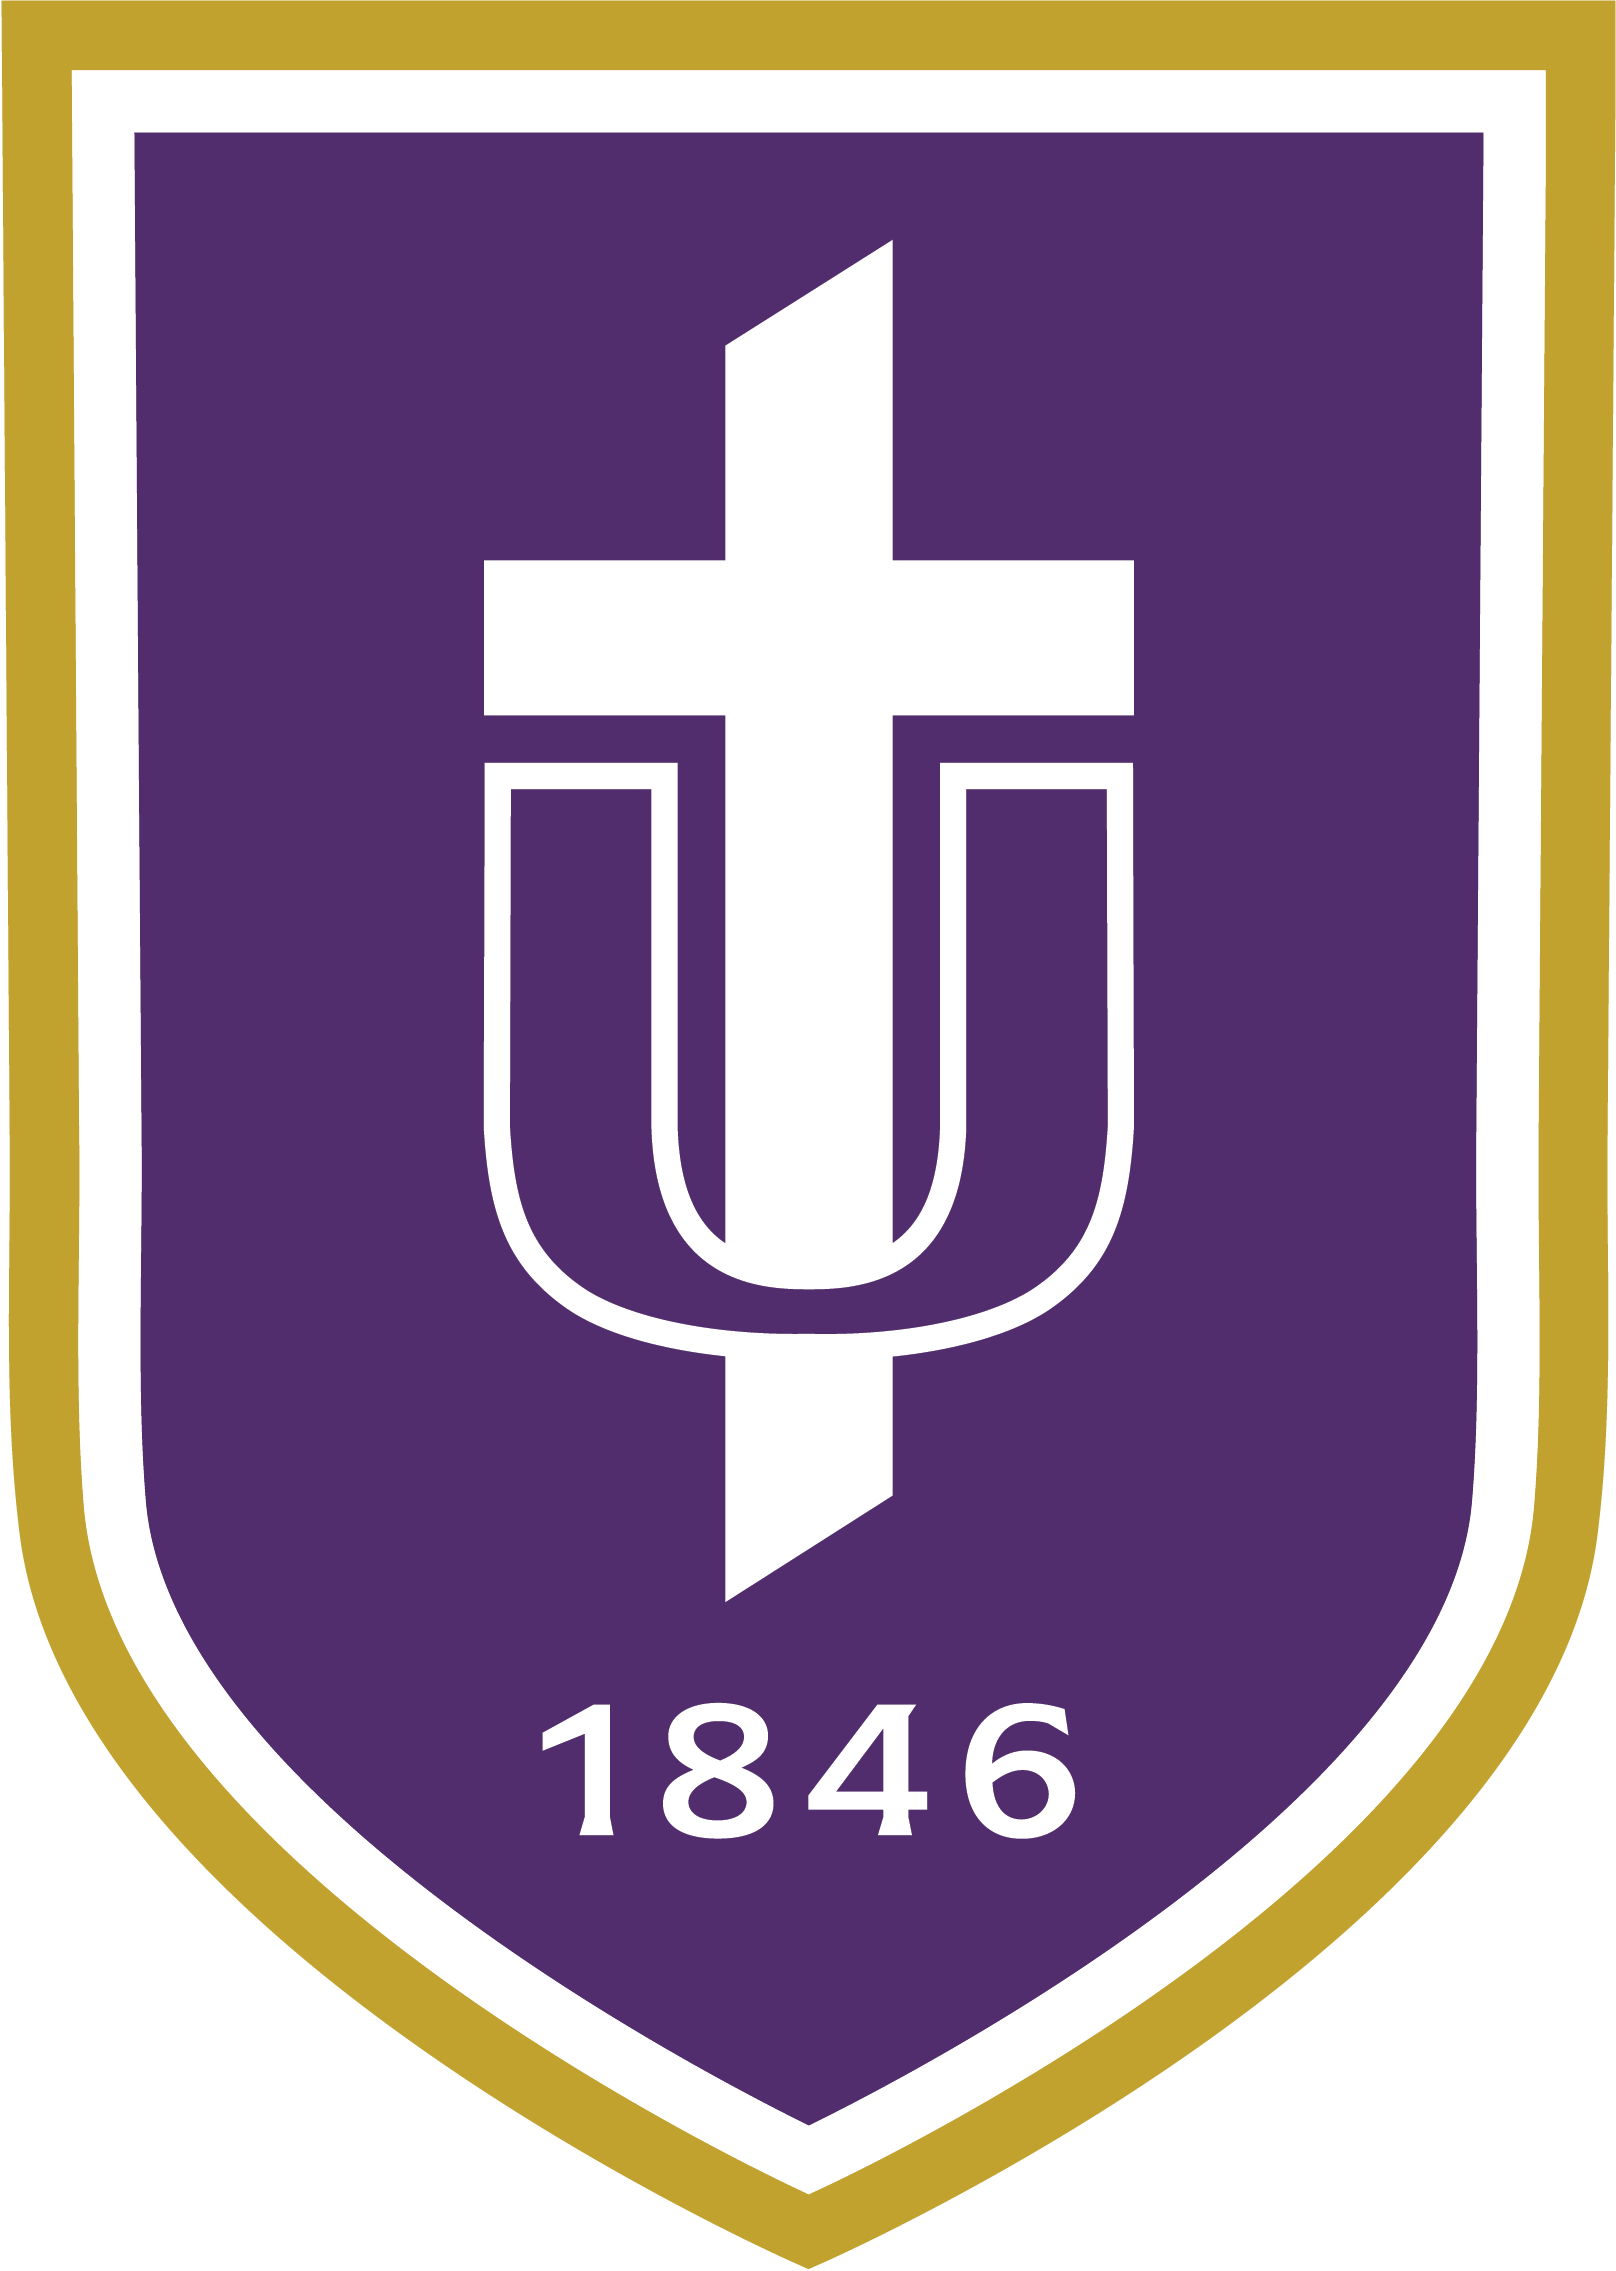 Taylor University Shield